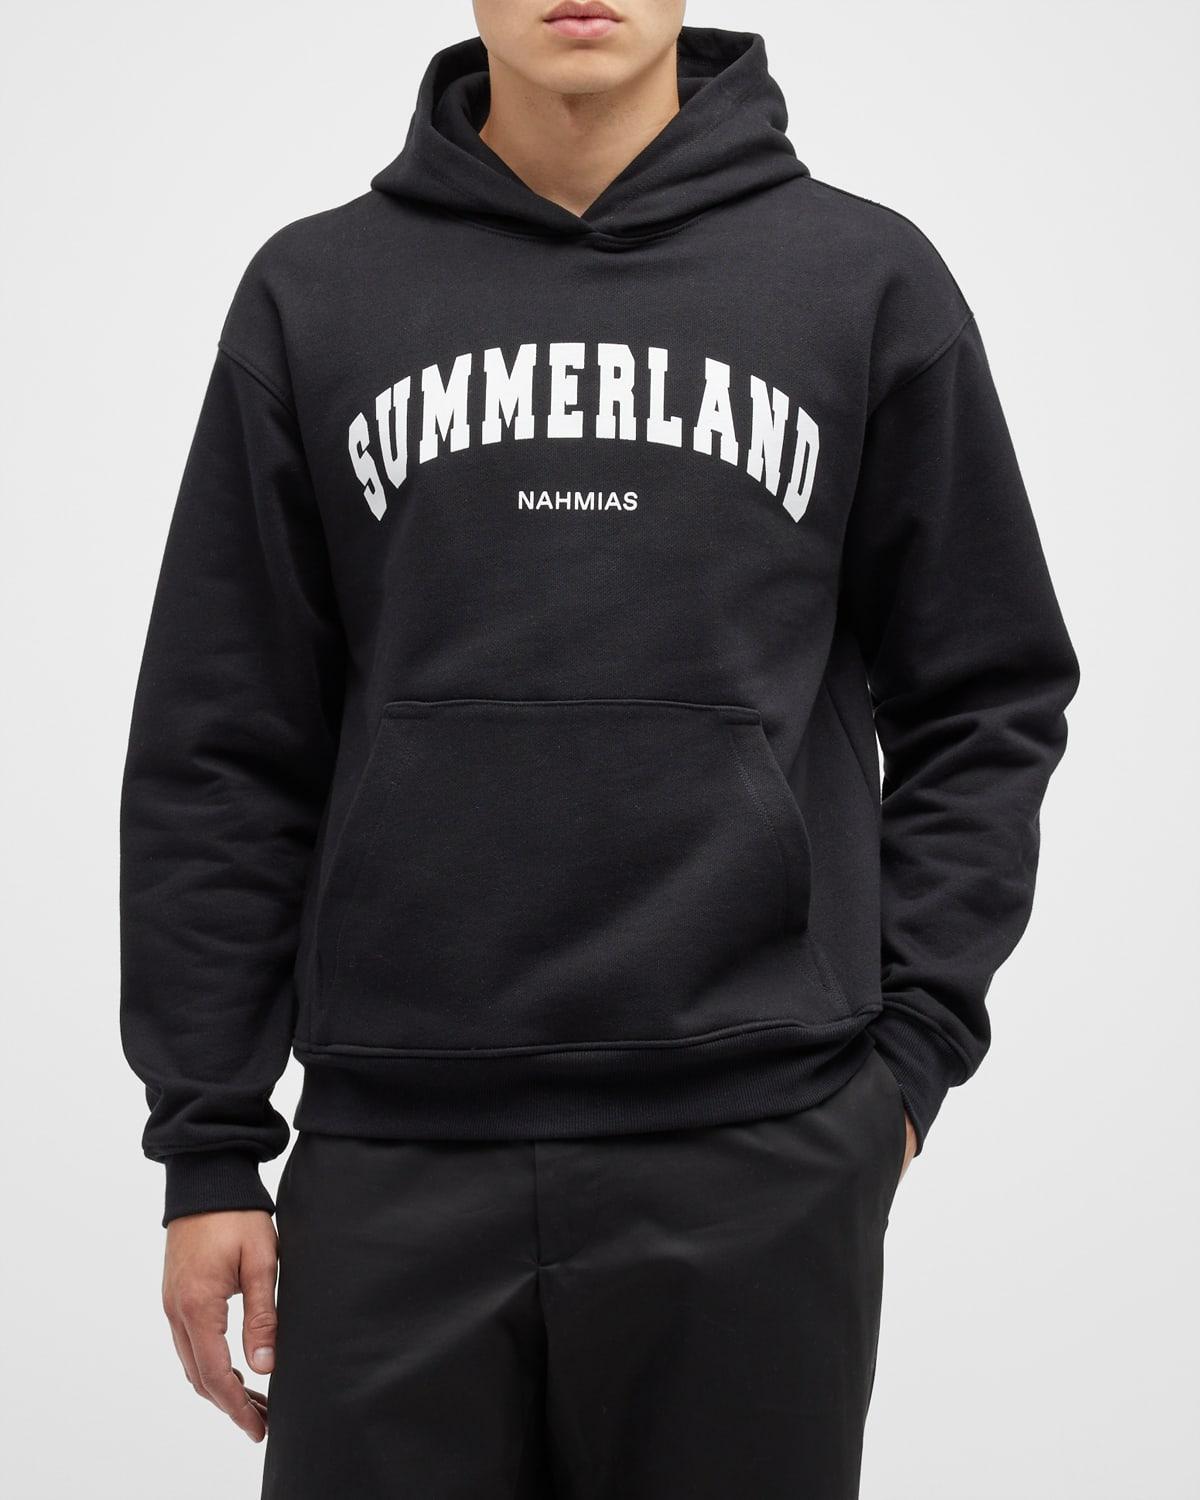 NAHMIAS Summerland Logo Pullover Hoodie in Black for Men | Lyst